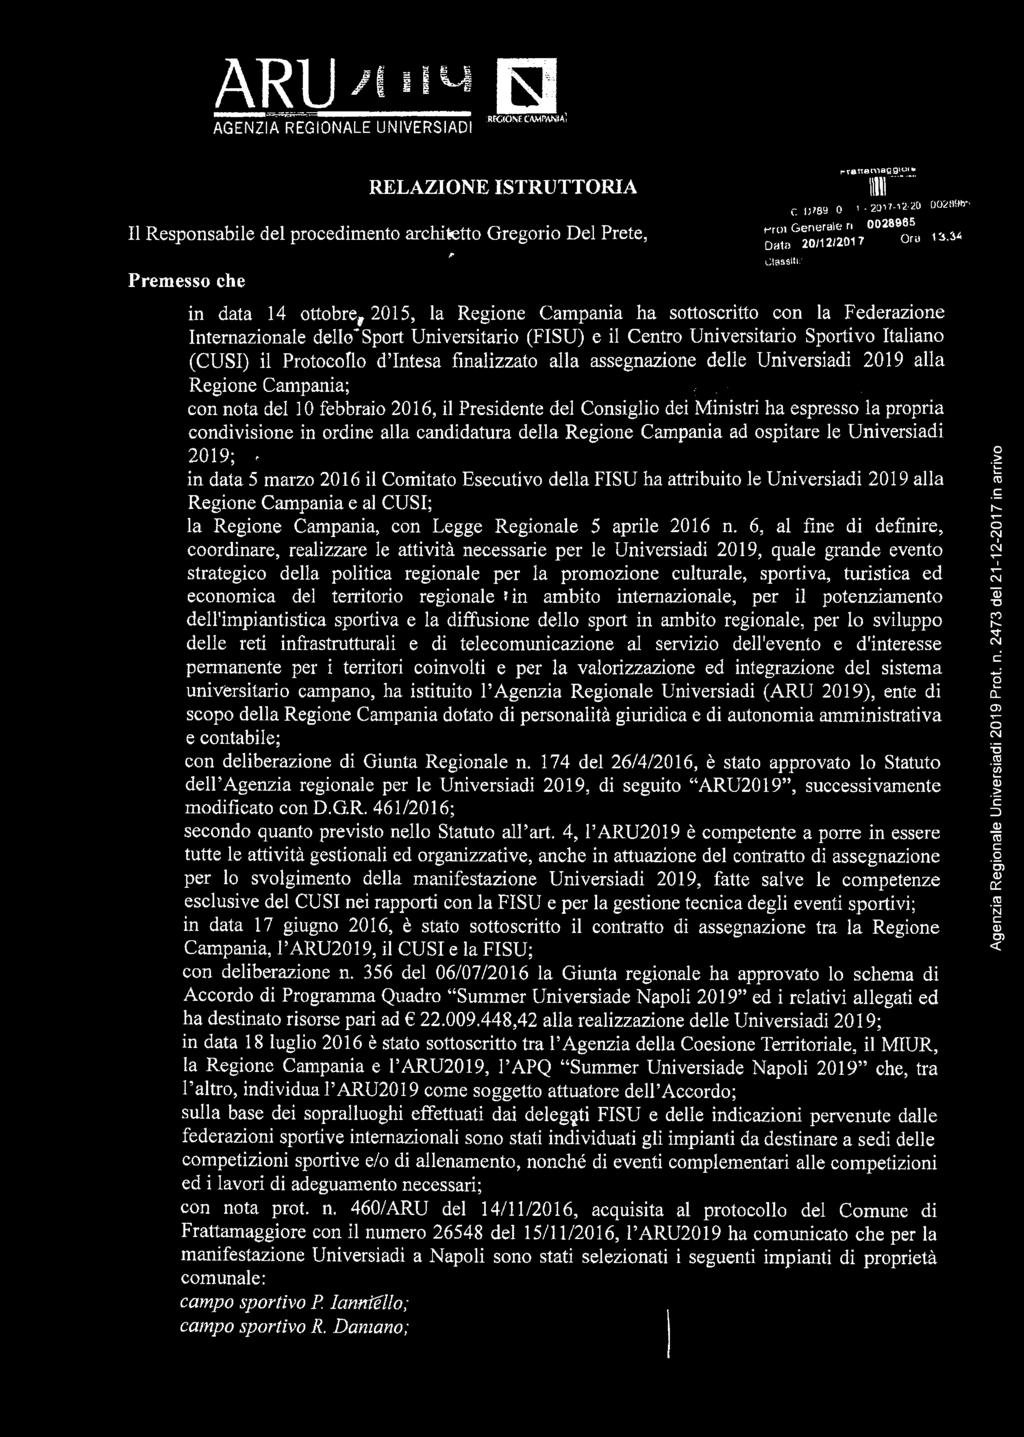 34 in data 14 ottobre, 2015, la Regione Campania ha sottoscritto con la Federazione Internazionale dello*sport Universitario (FISU) e il Centro Universitario Sportivo Italiano (CUSI) il Protocollo d